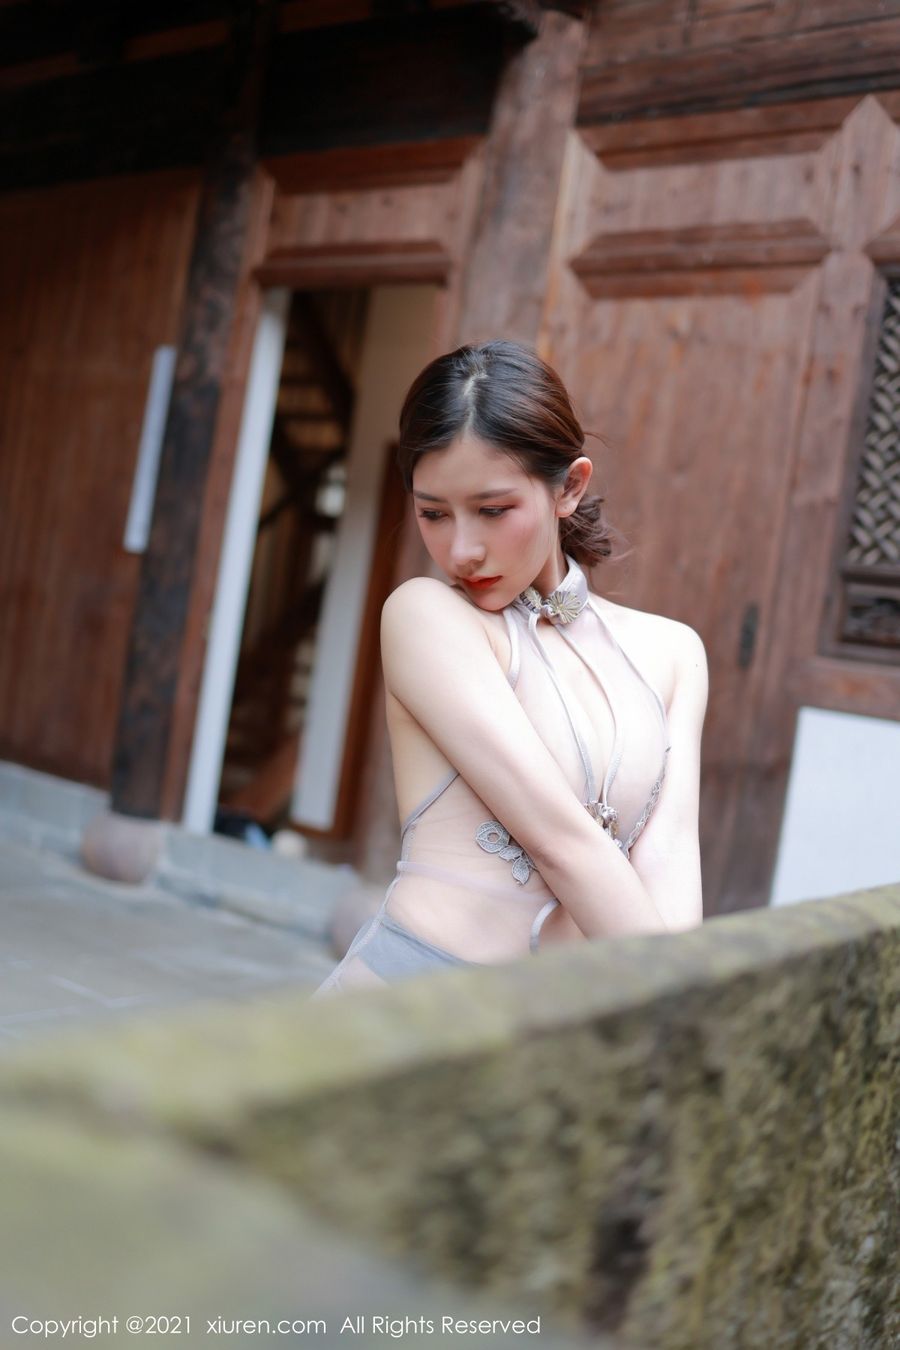 美女模特尹甜甜镂空情趣内衣灰色丝袜系列性感写真